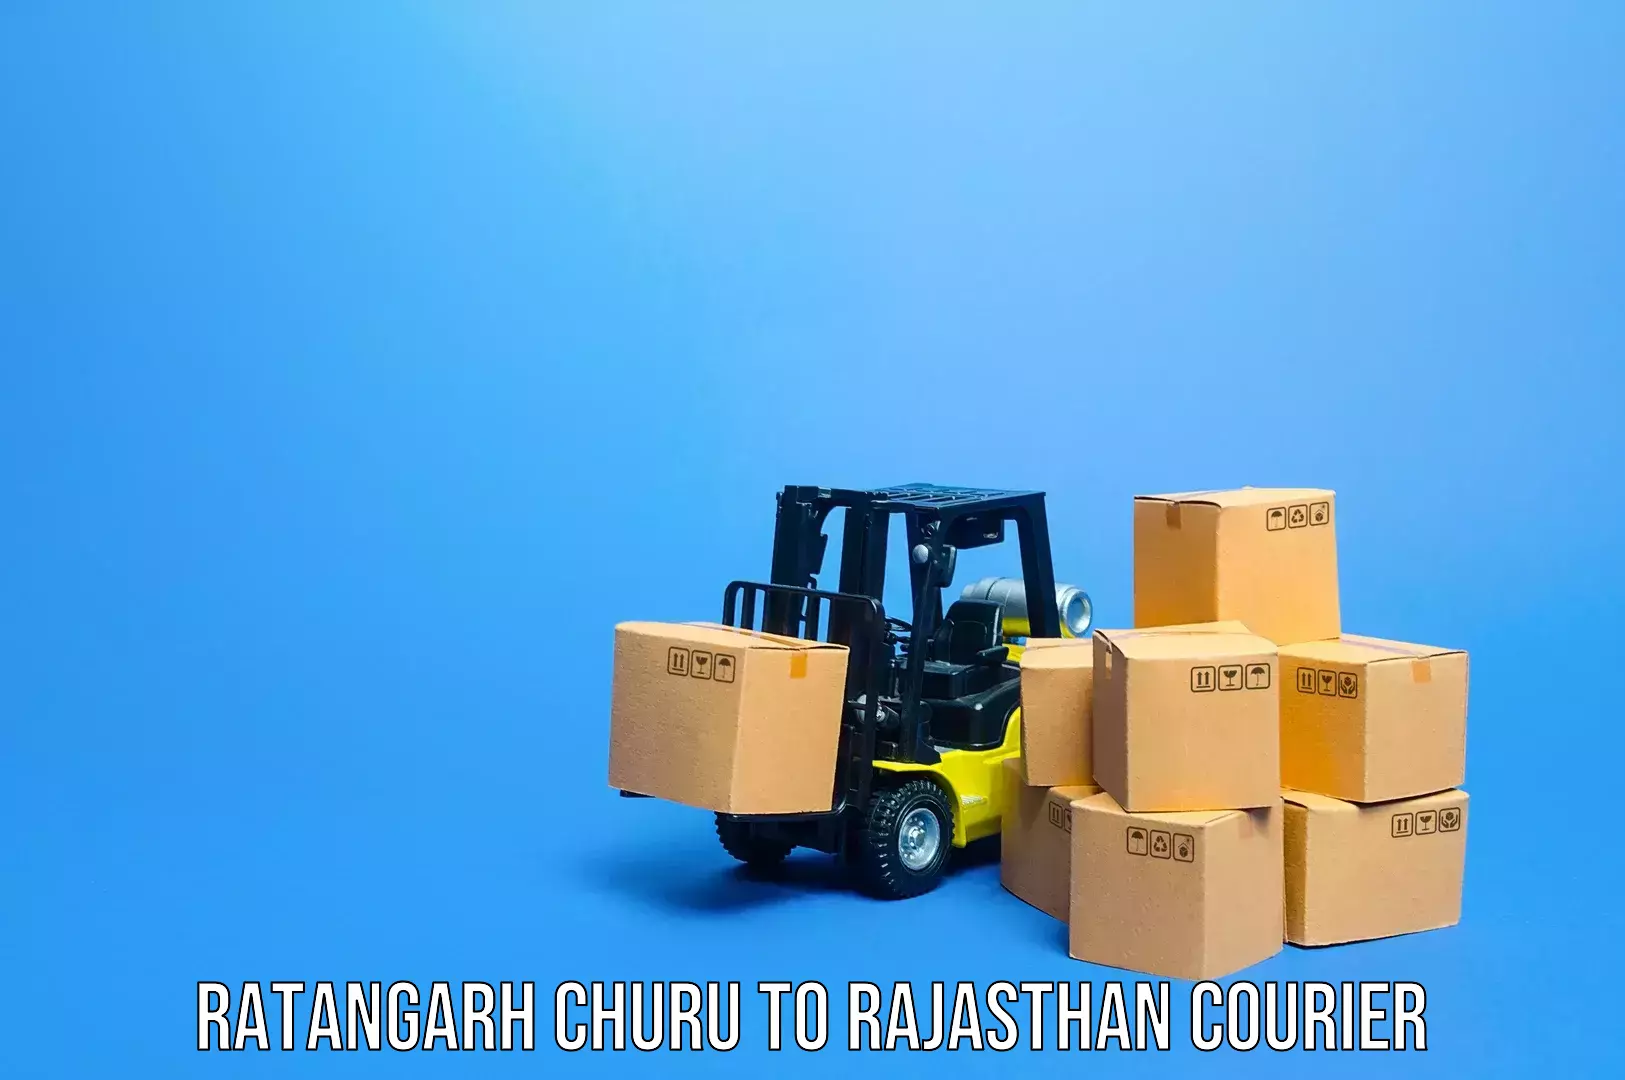 Baggage transport technology Ratangarh Churu to Rajasthan